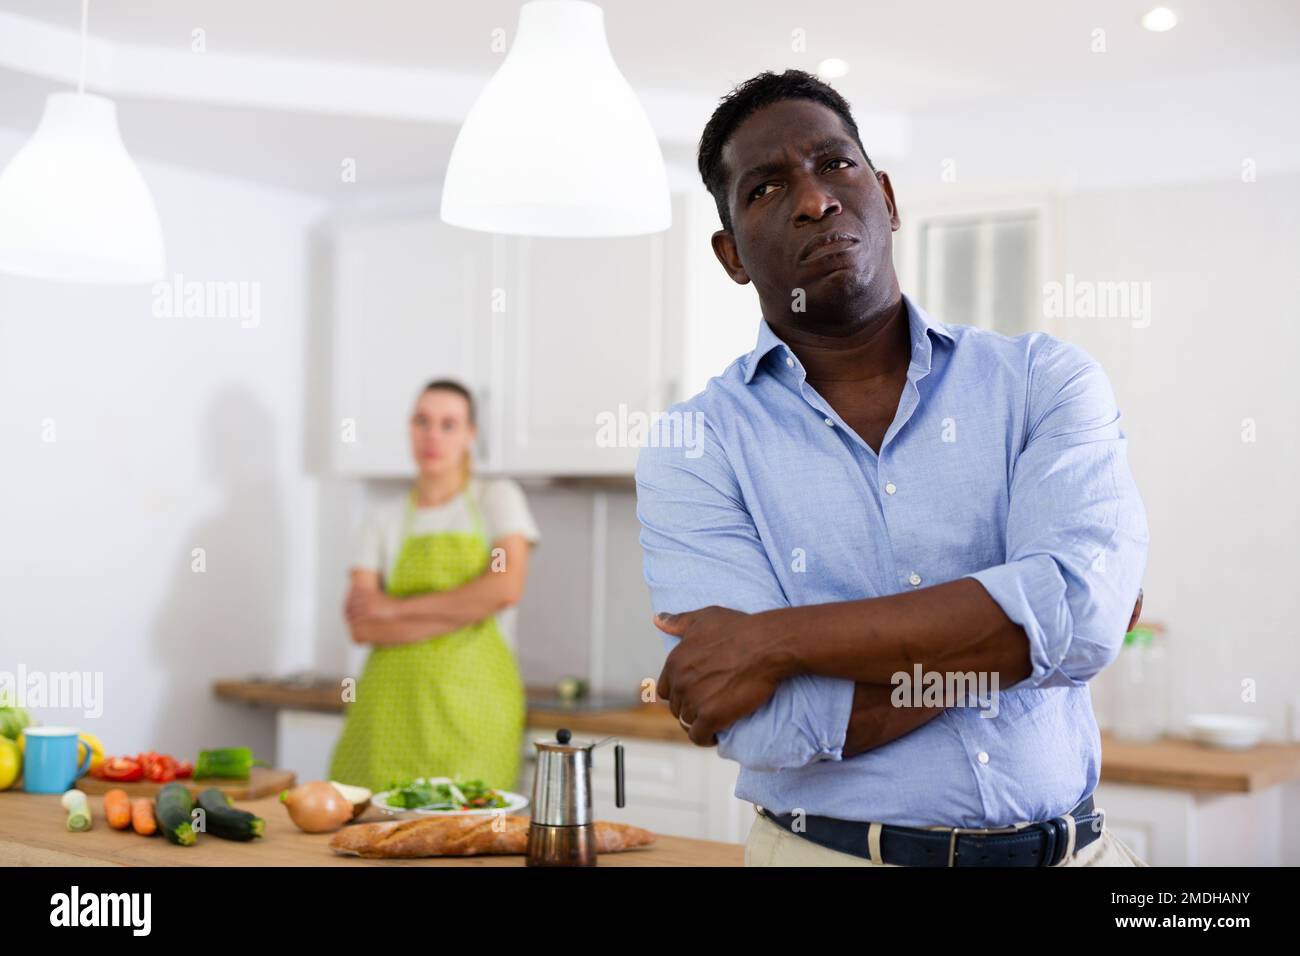 La esposa no está contenta con su esposo. Pelea familiar en la cocina Foto de stock